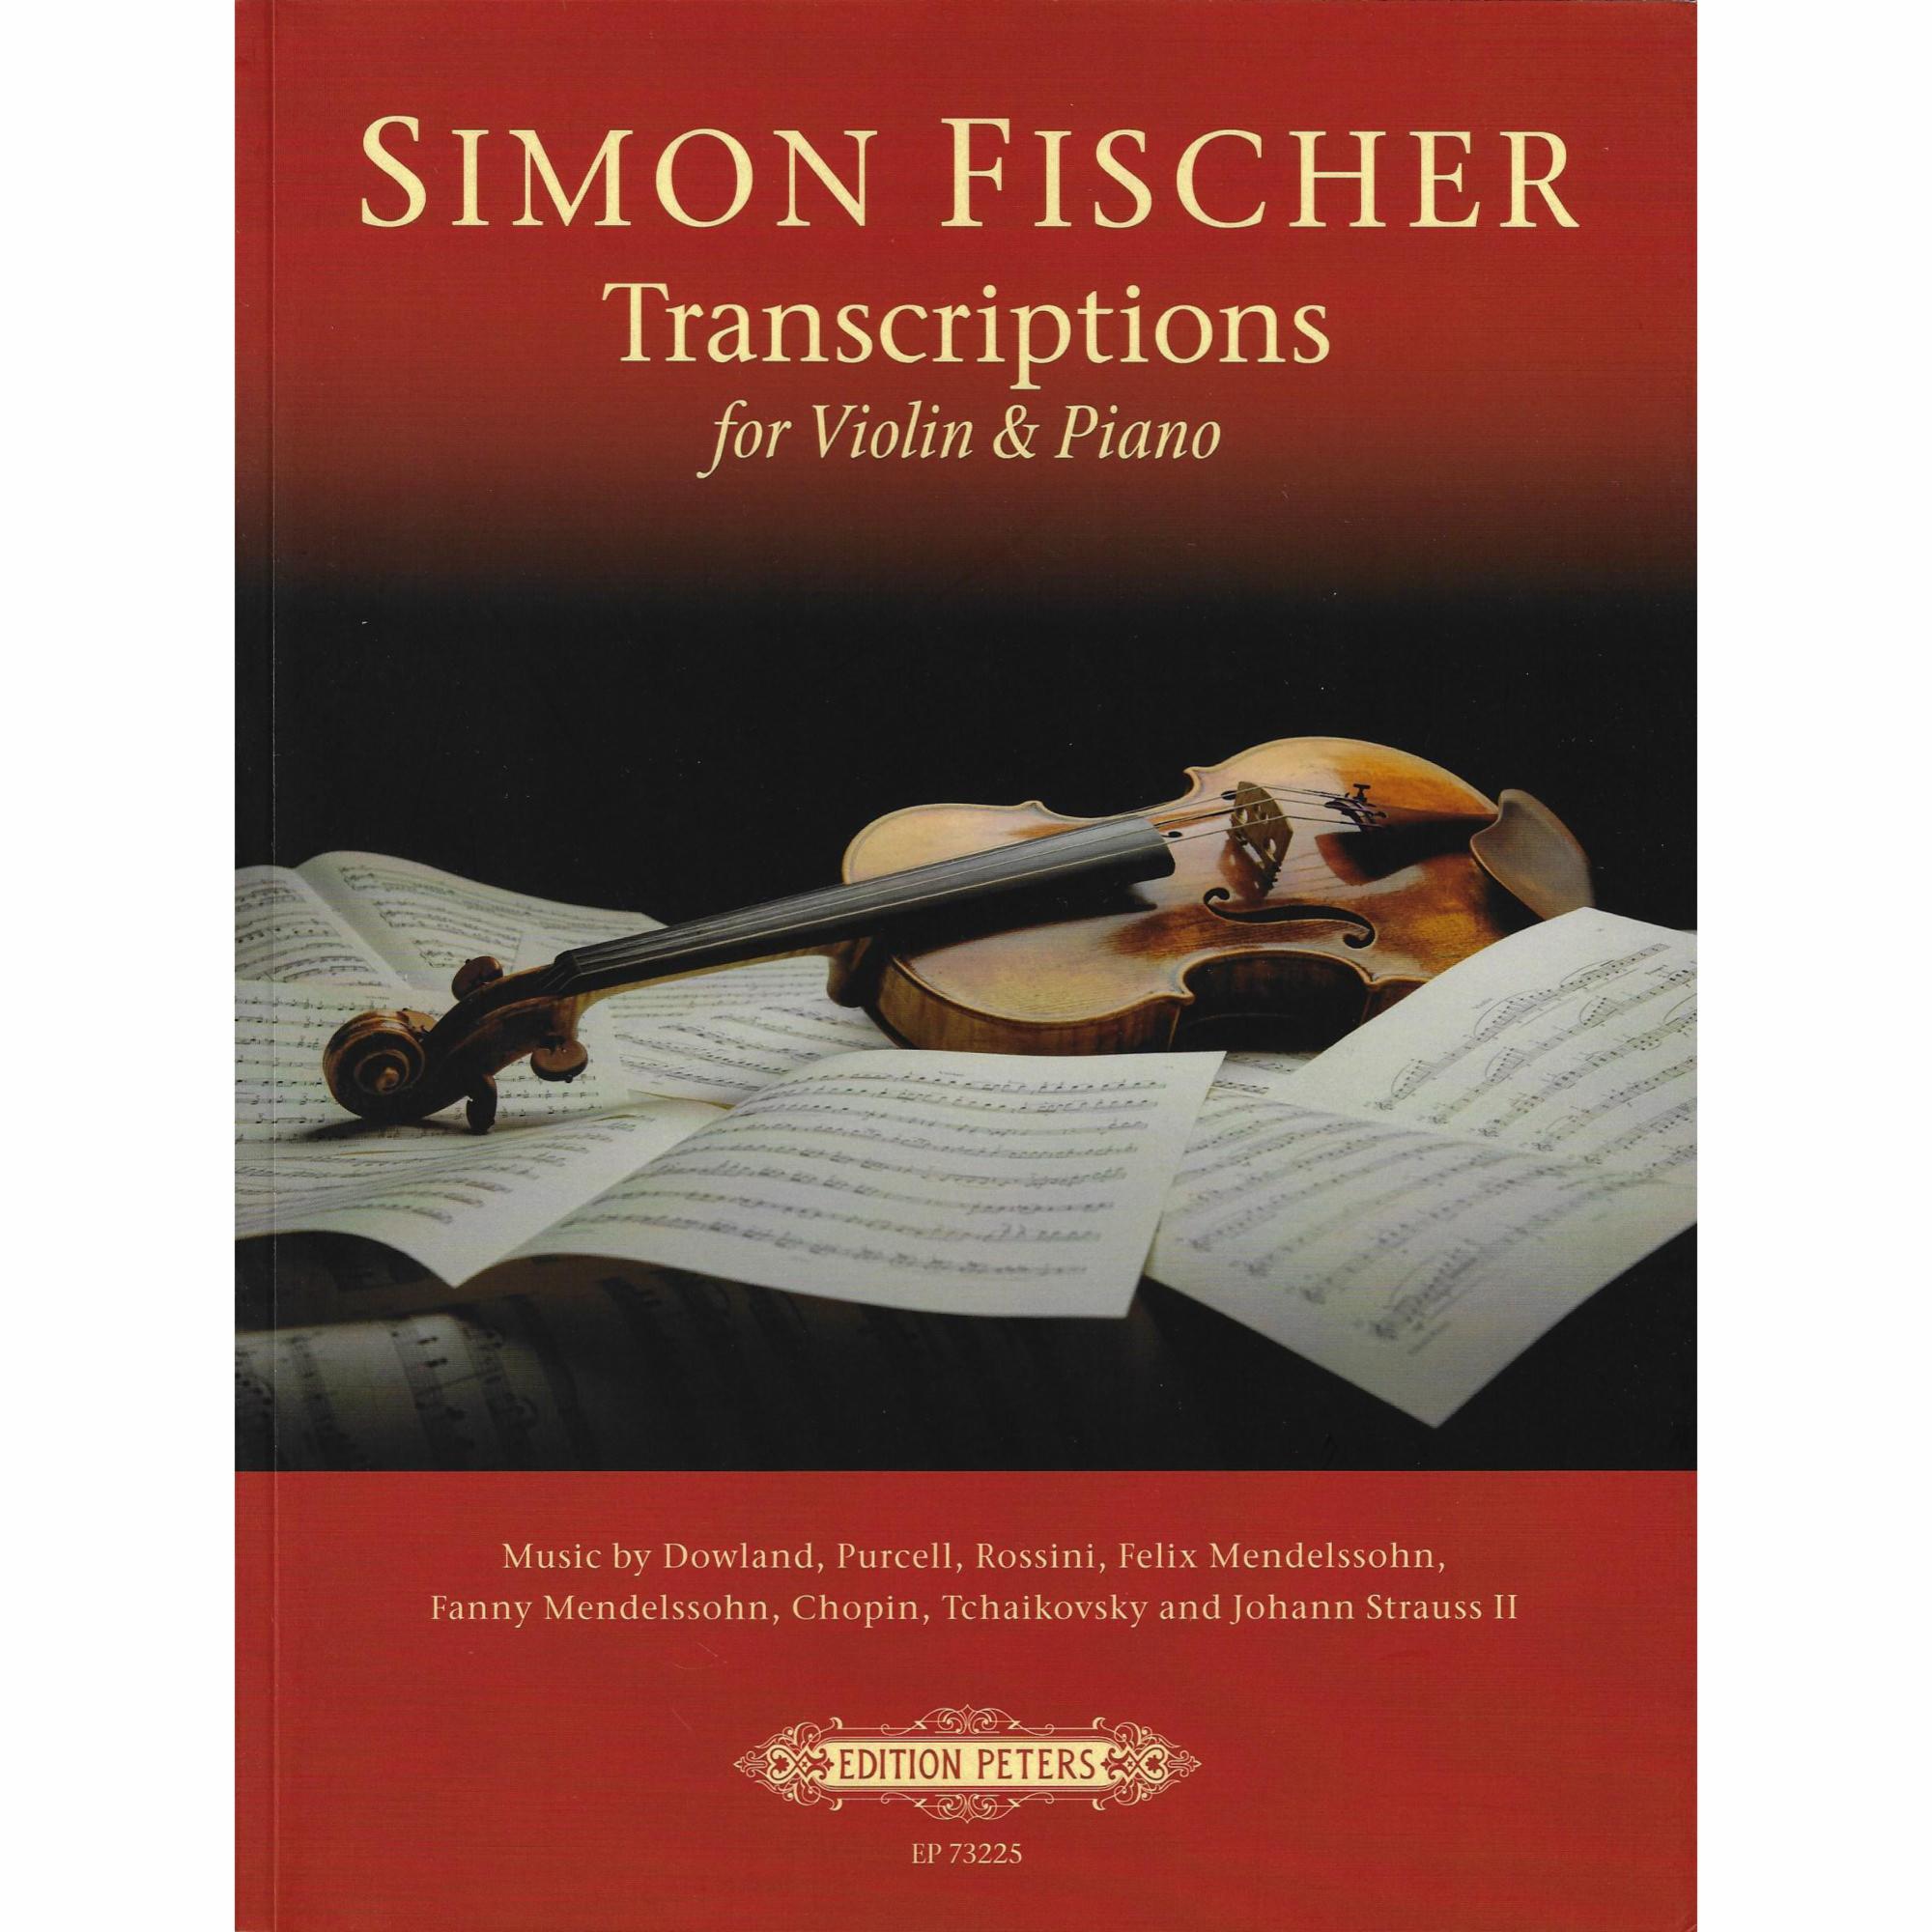 Simon Fischer: Transcriptions for Violin and Piano